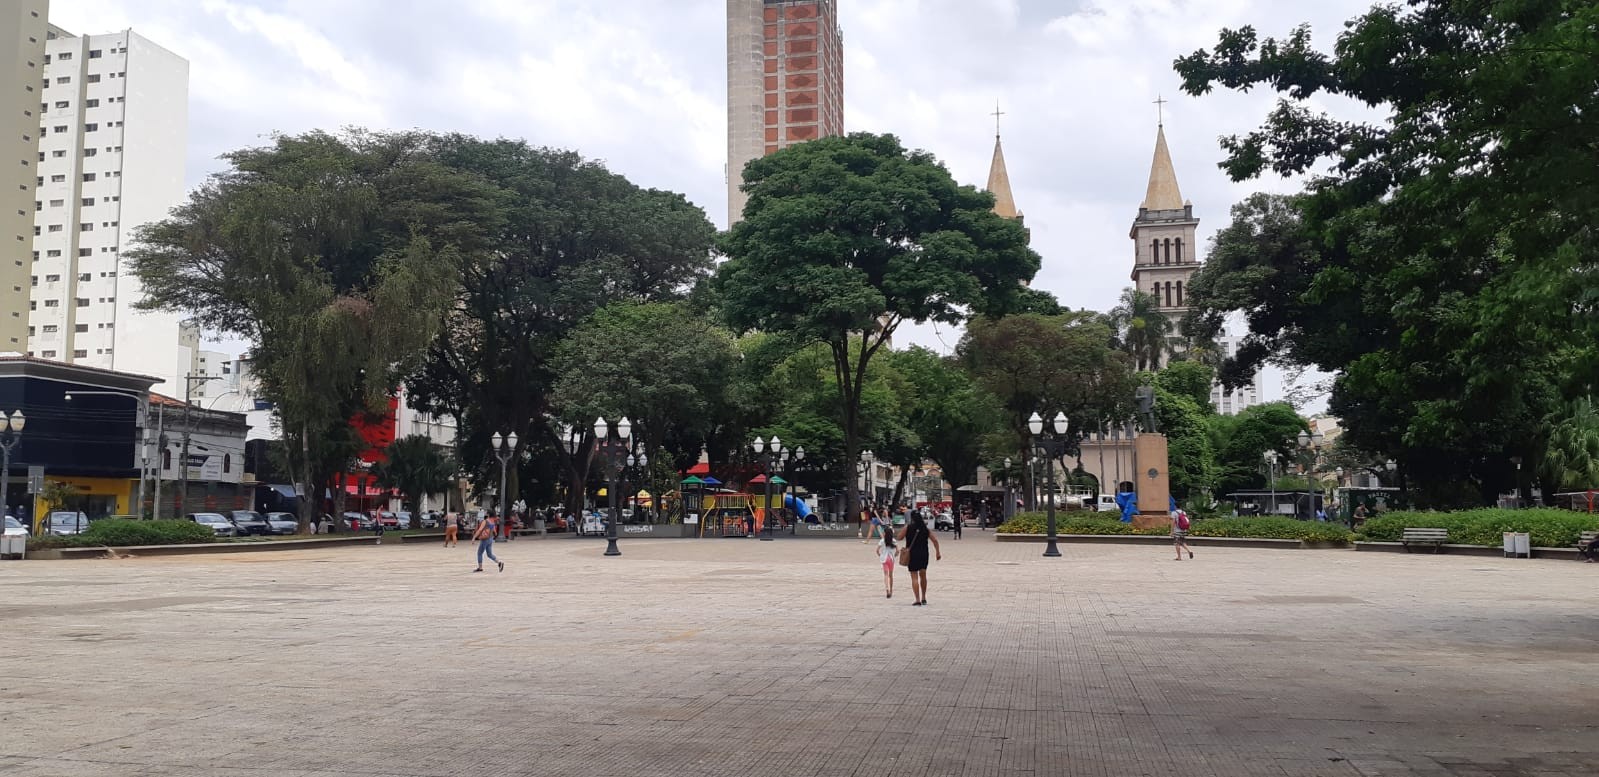 Prefeitura de Piracicaba finaliza projeto de revitalização da Praça José Bonifácio e anuncia licitação